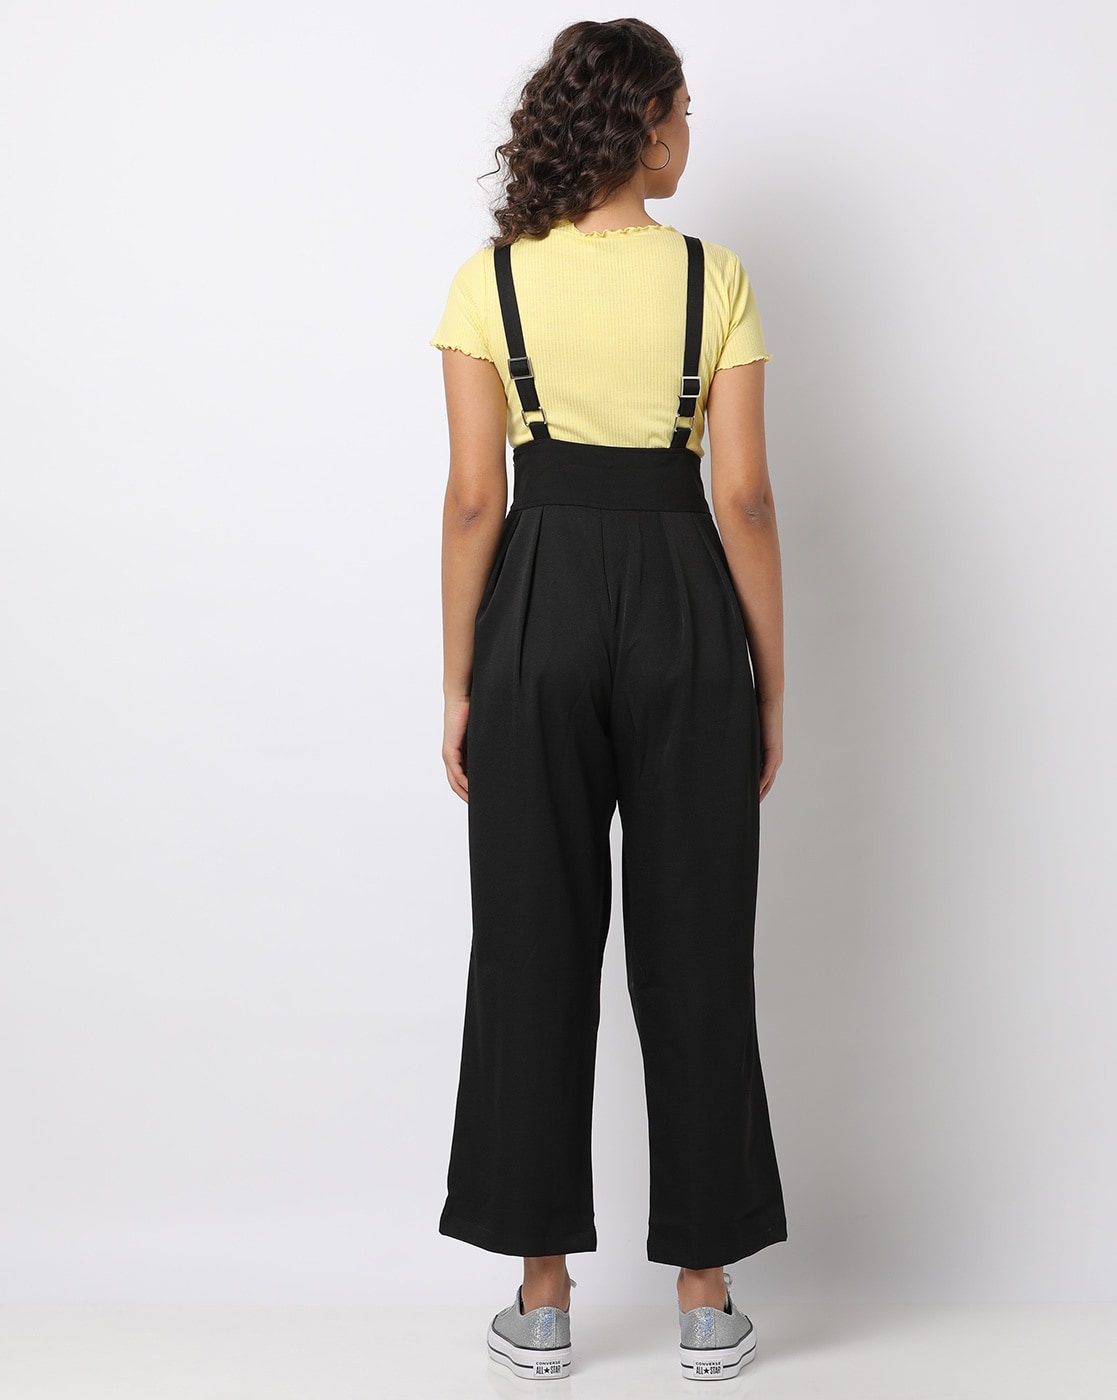 Luxe Label  Pants  Jumpsuits  Blair Black Suspender Woven Pants   Poshmark